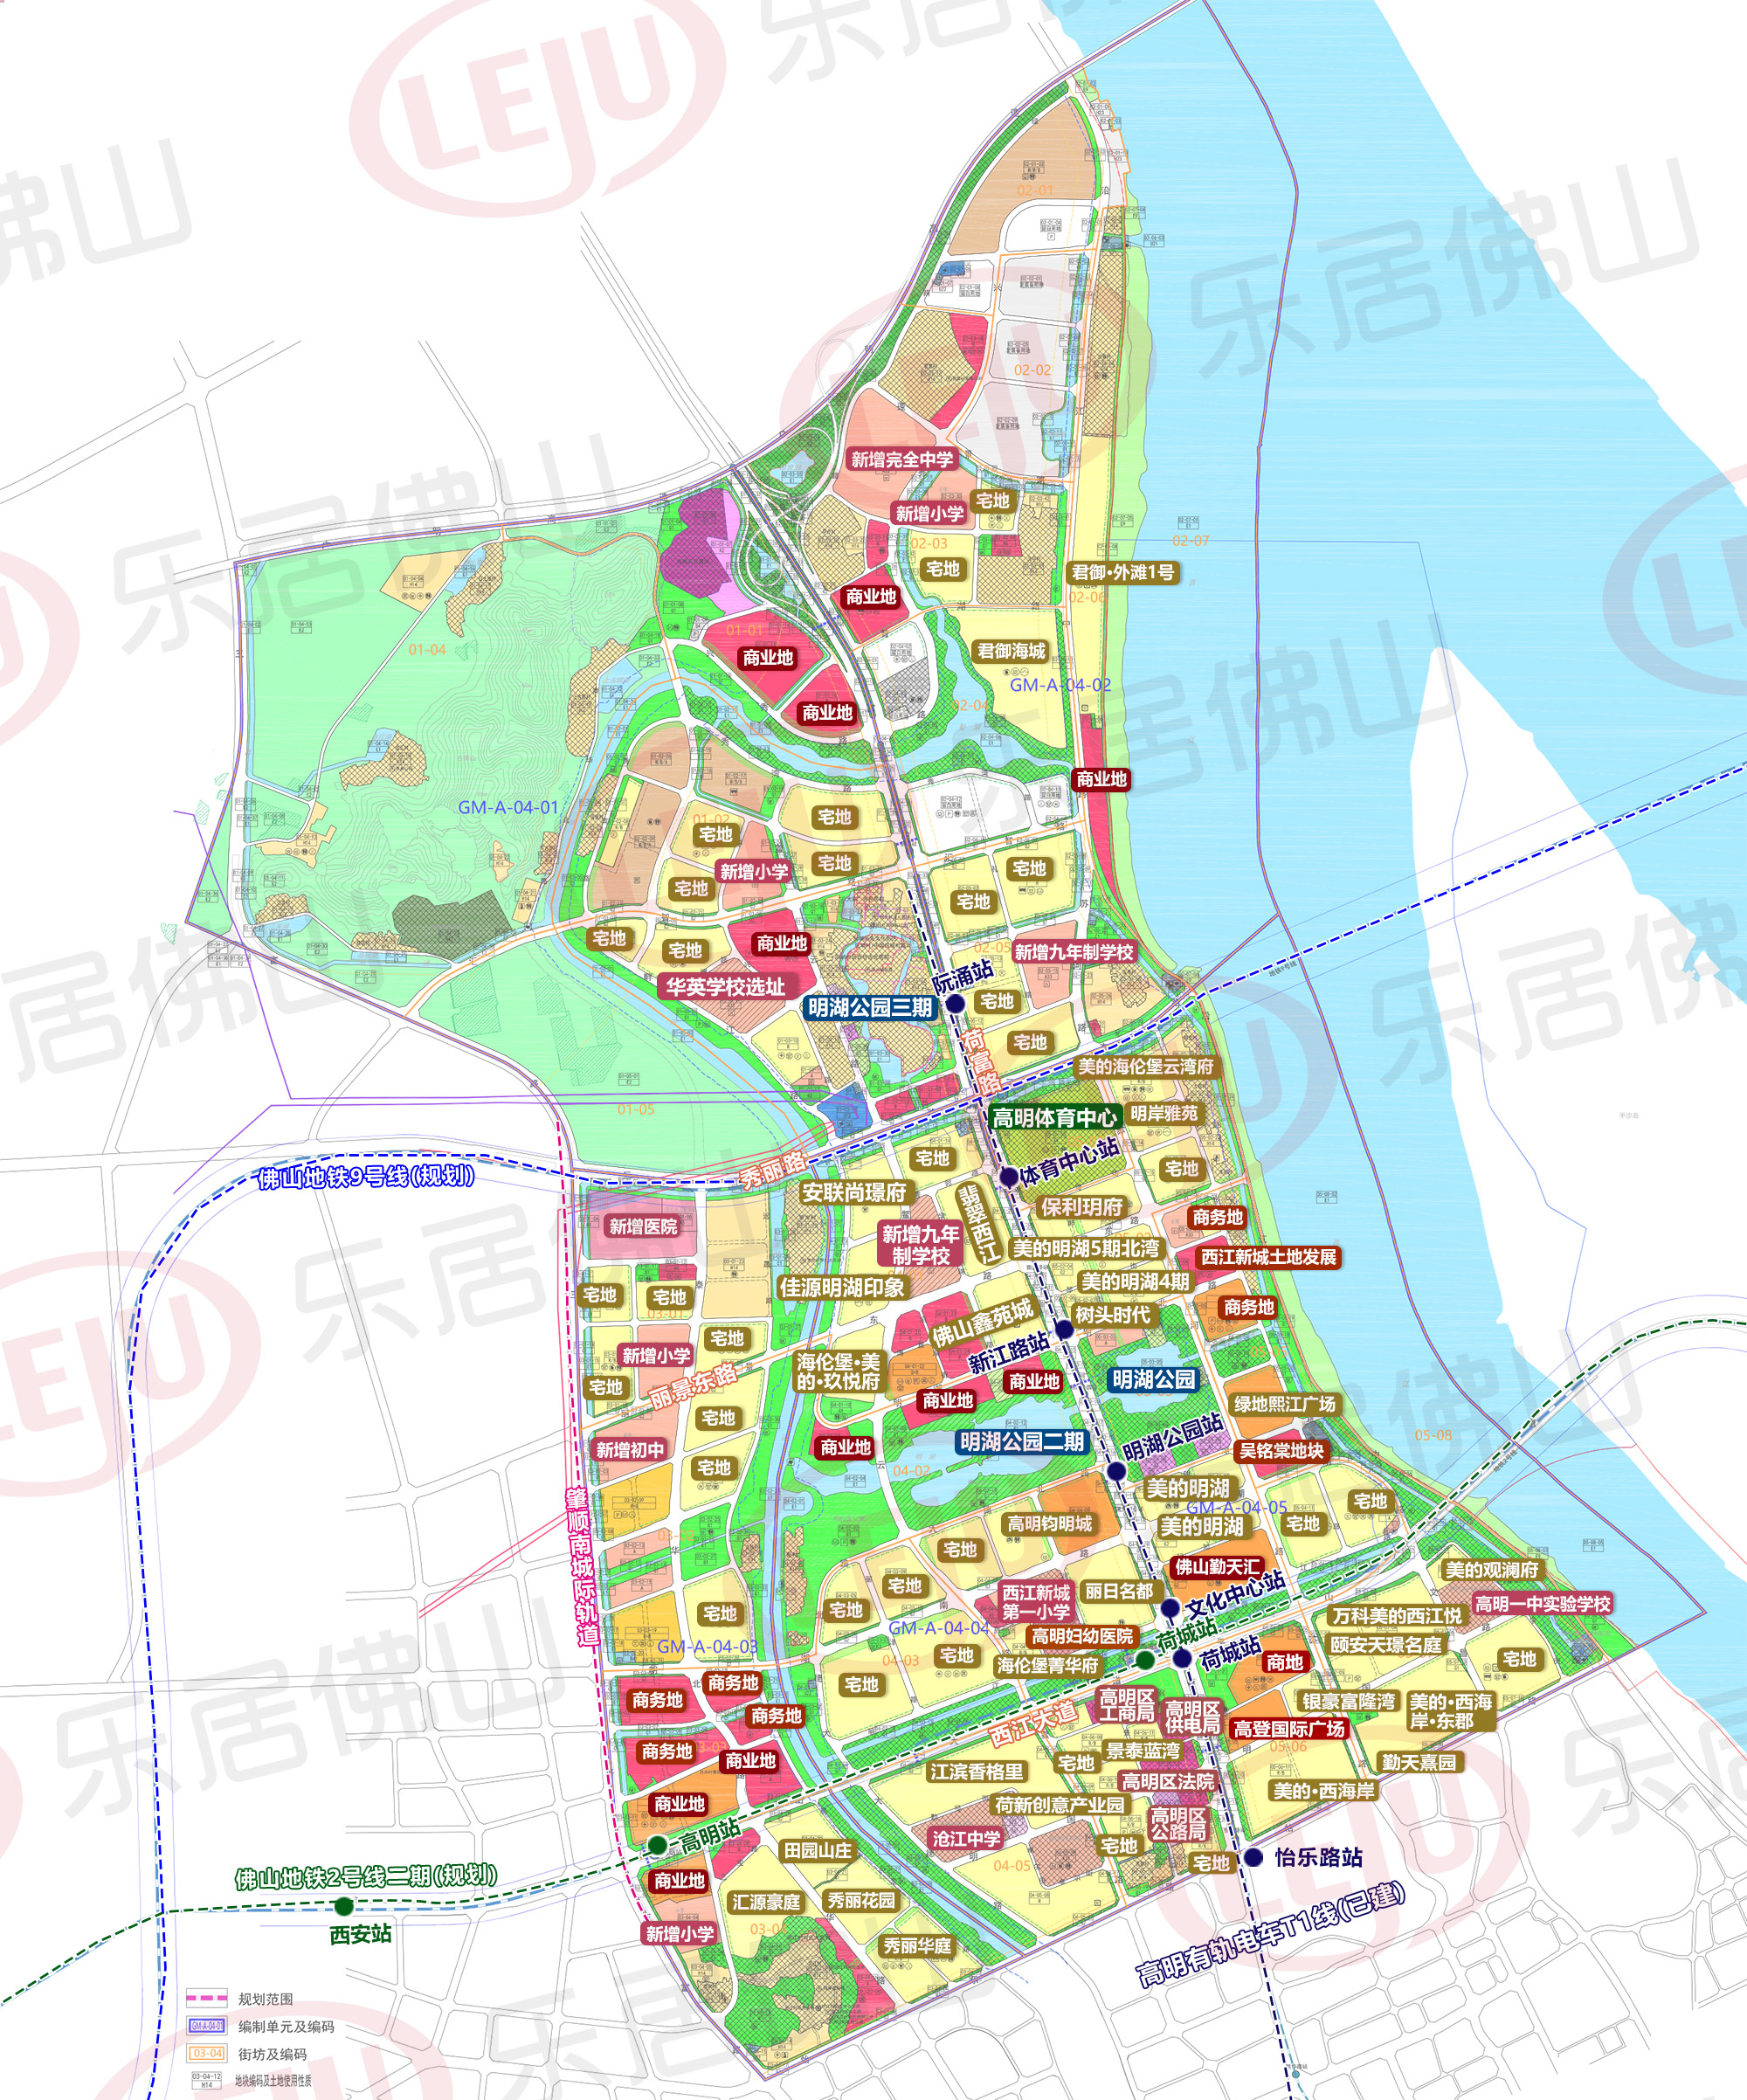 佛山高明西江新城规划图片